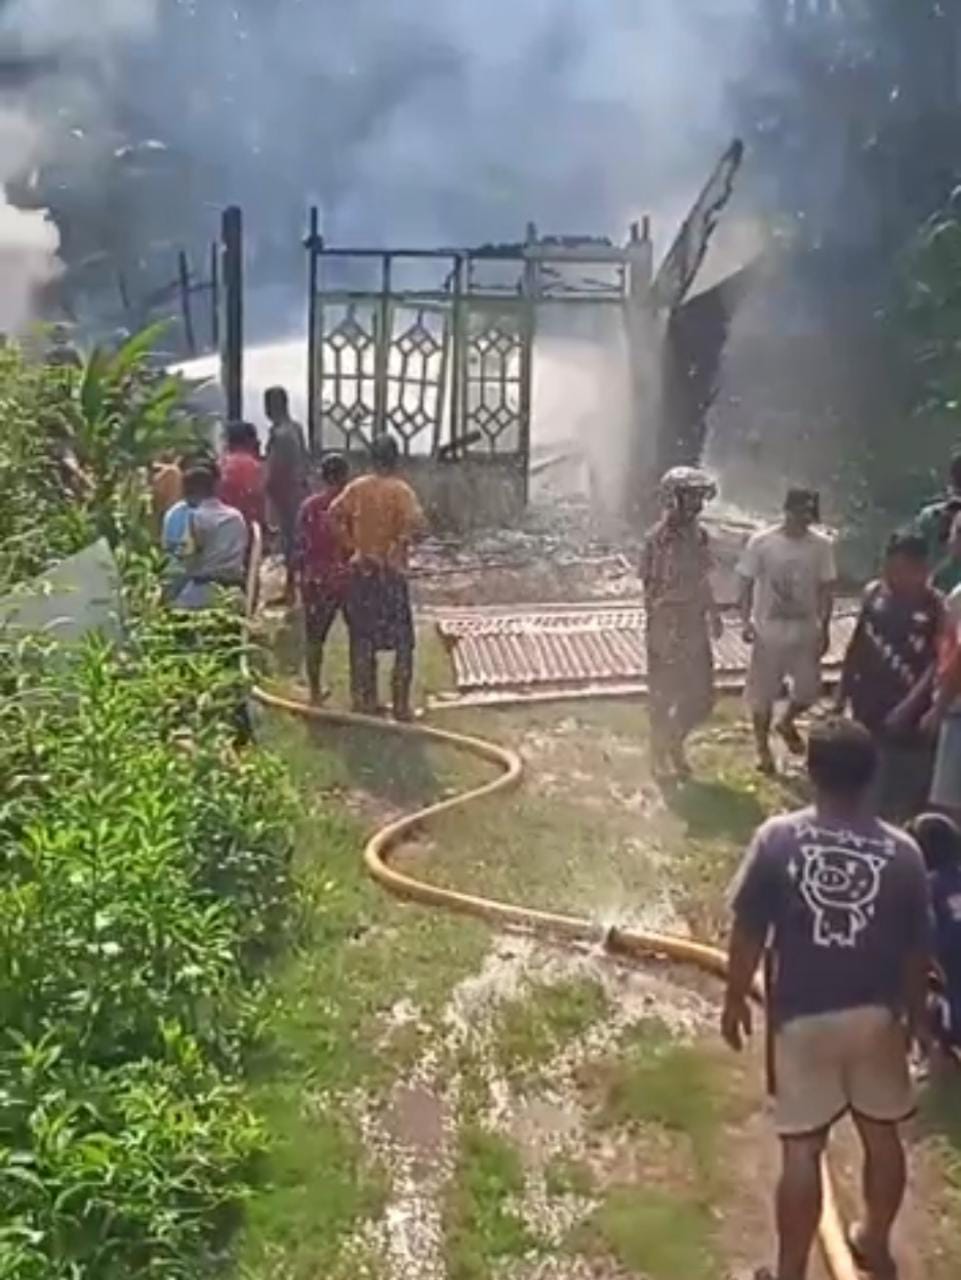 Rumah Semi Permanen di Pinang Raya Ludes Terbakar